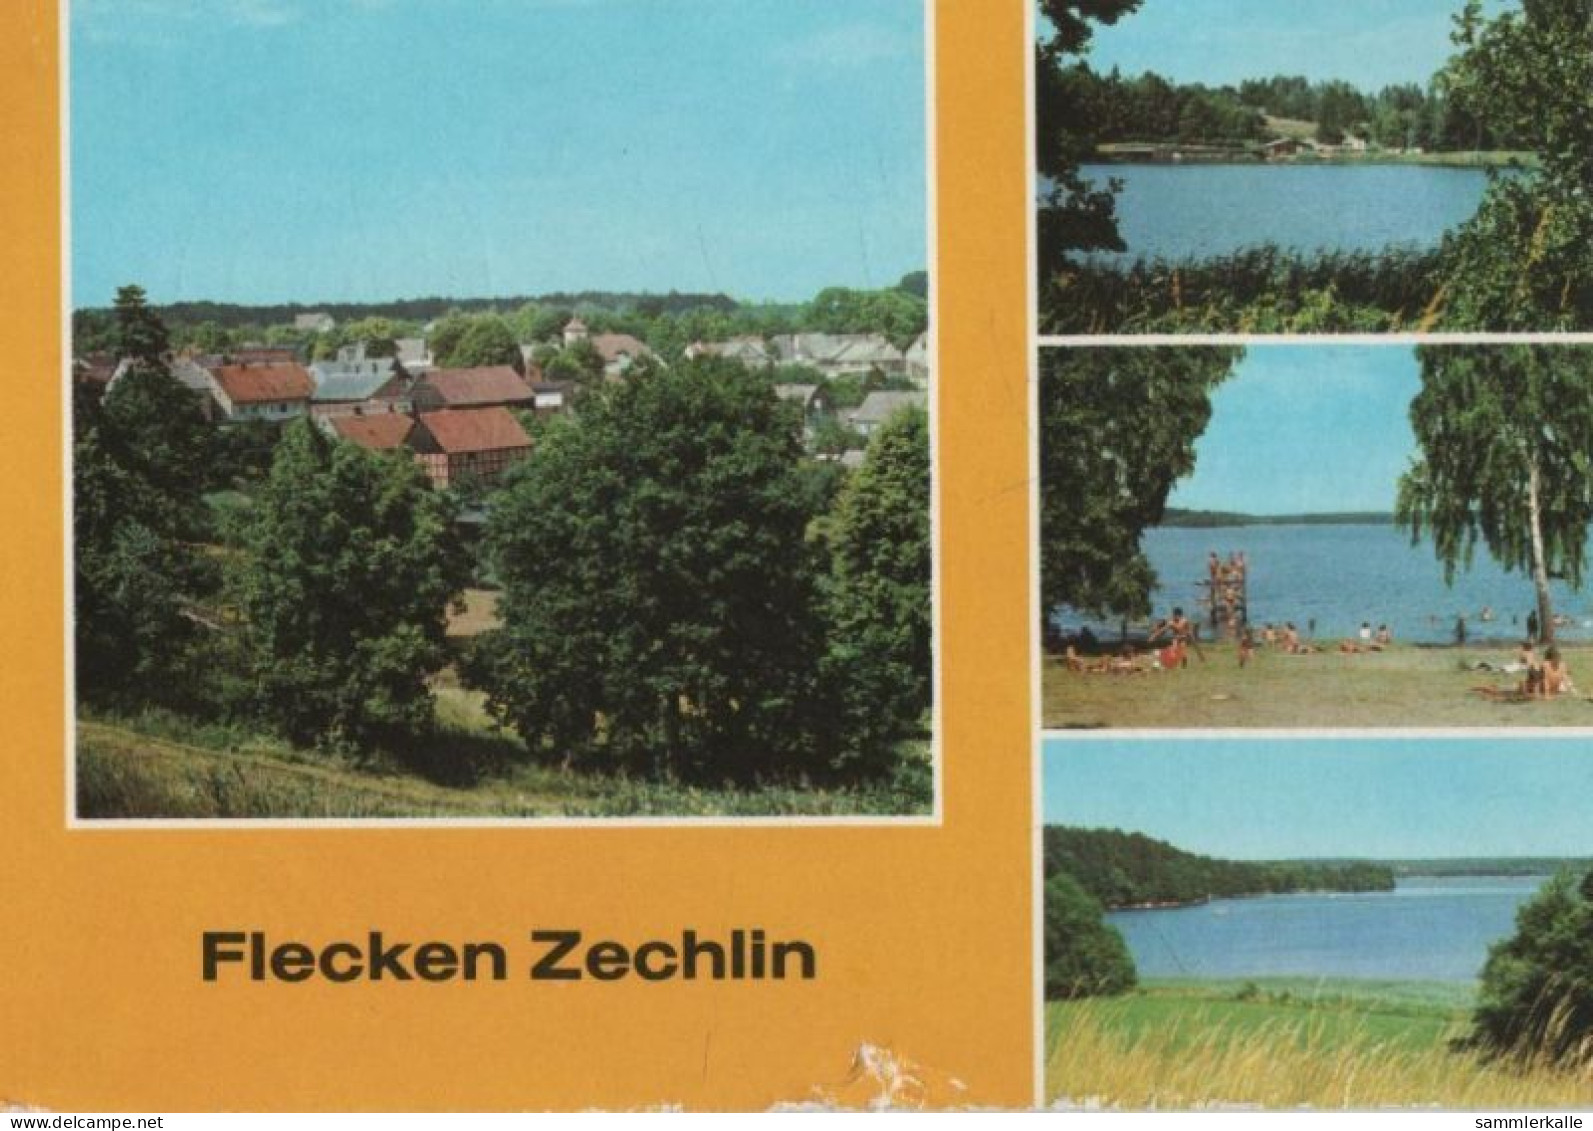 75725 - Rheinsberg-Zechlin - U.a. Schwarzer See - 1983 - Zechlin